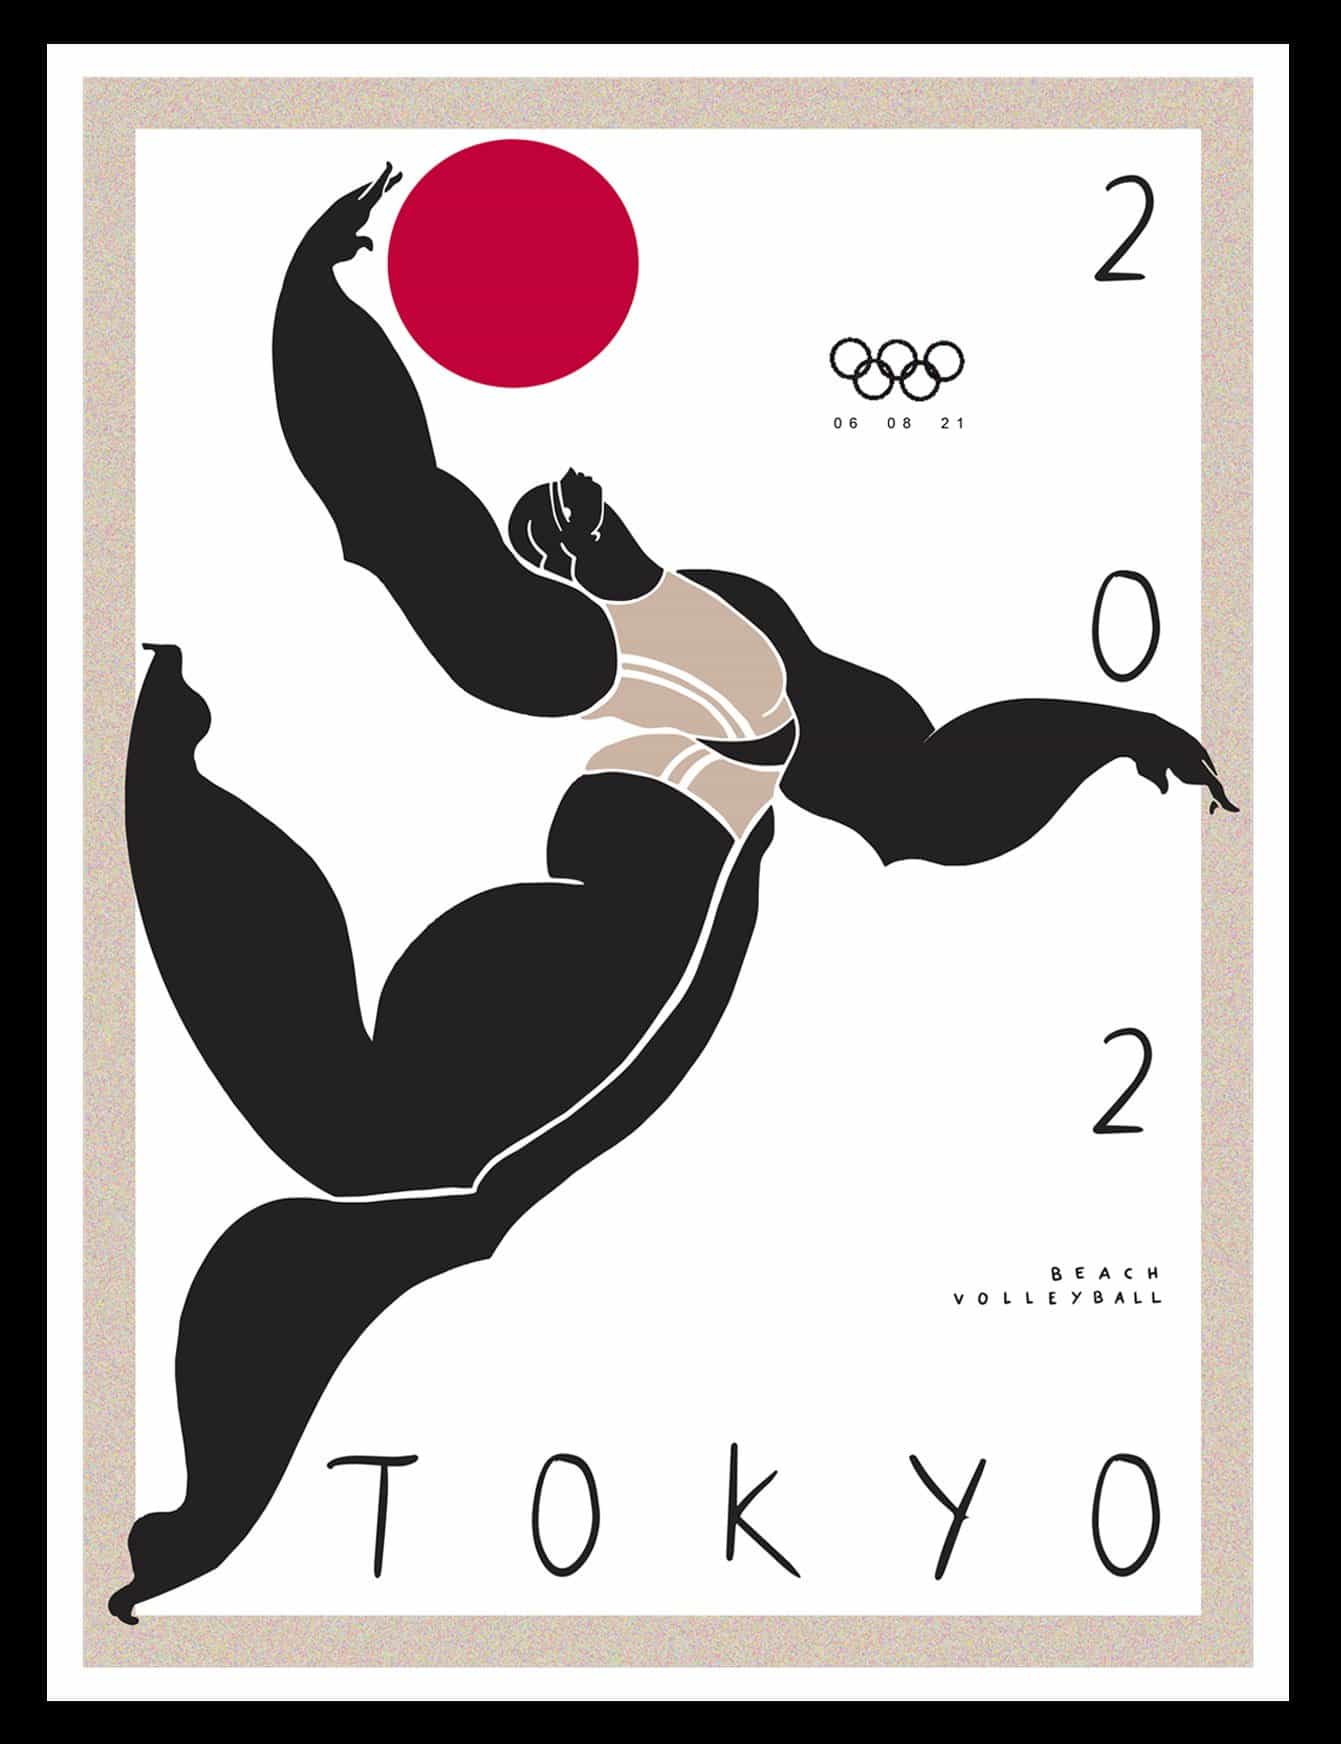 Kelly Anna: Serie de los Juegos Olímpicos de Tokio, Levantamiento de pesas (Copyright © Kelly Anna, 2021)